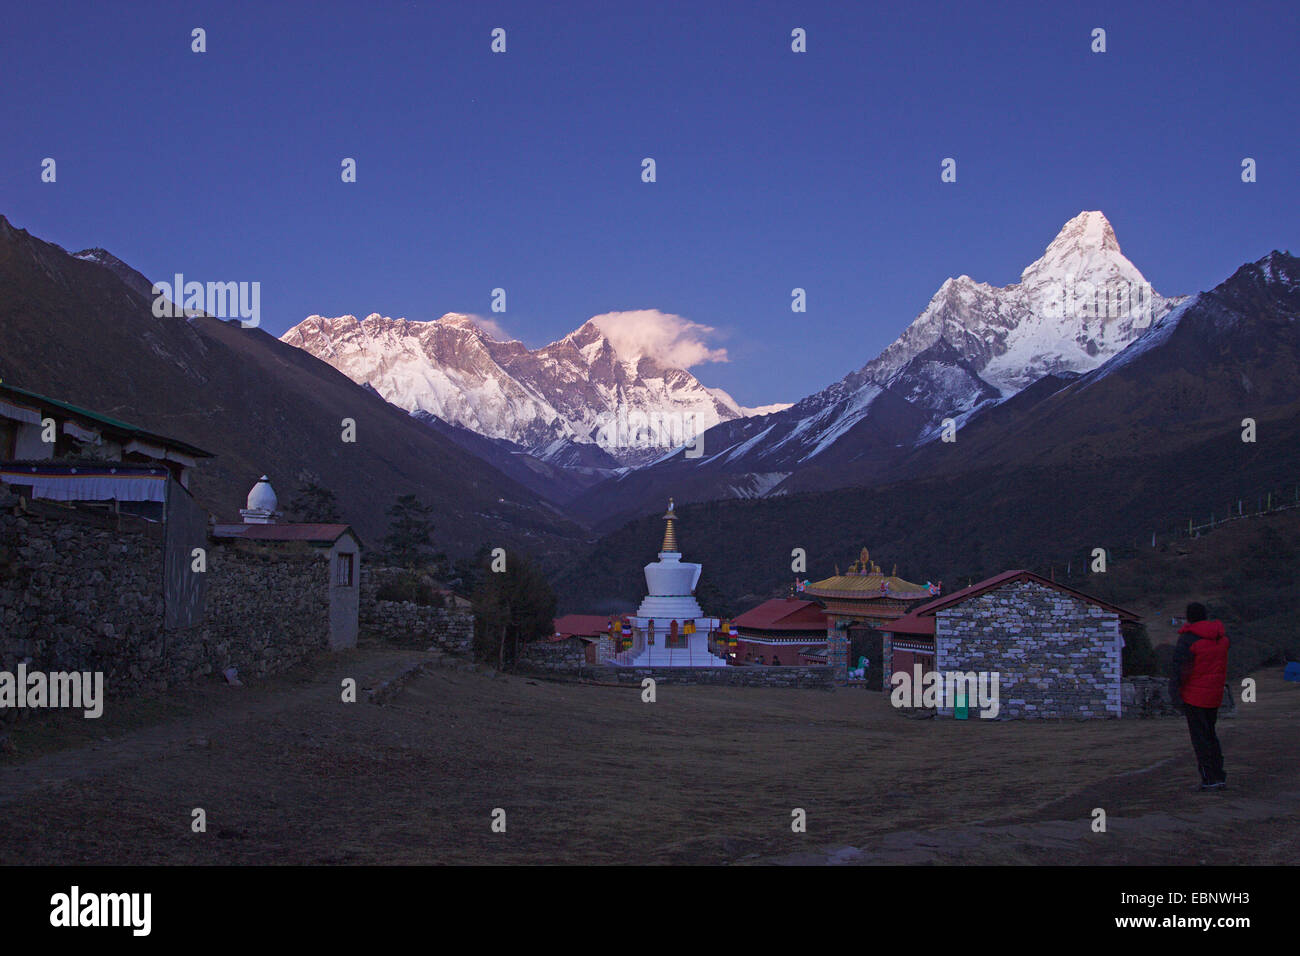 Vista dal monastero di Tengboche sul Monte Everest, Nuptes, sul Lhotse e sull'Ama Dablam nella luce della sera, Nepal, Himalaya, Khumbu Himal Foto Stock